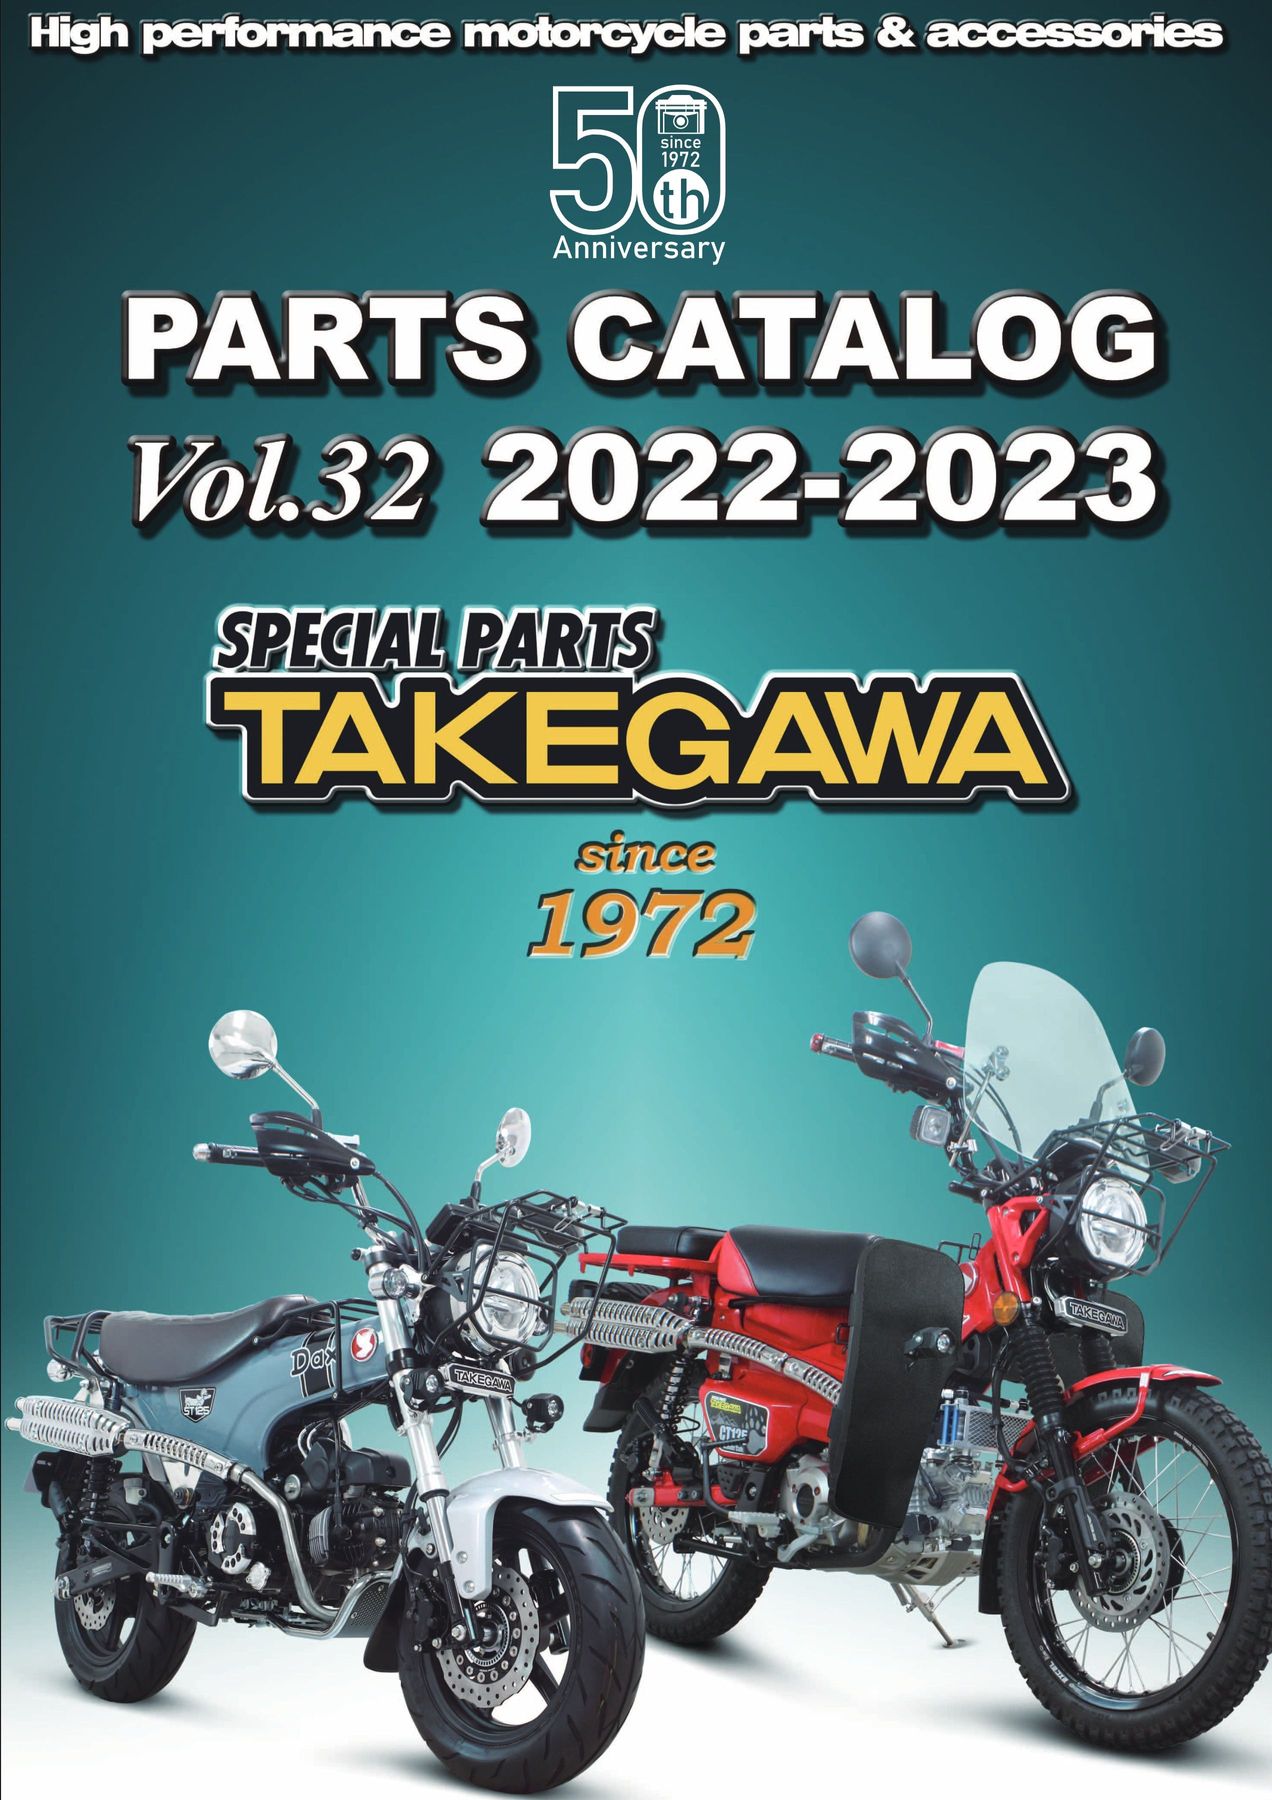 PARTS CATALOG Vol.32 2022-2023